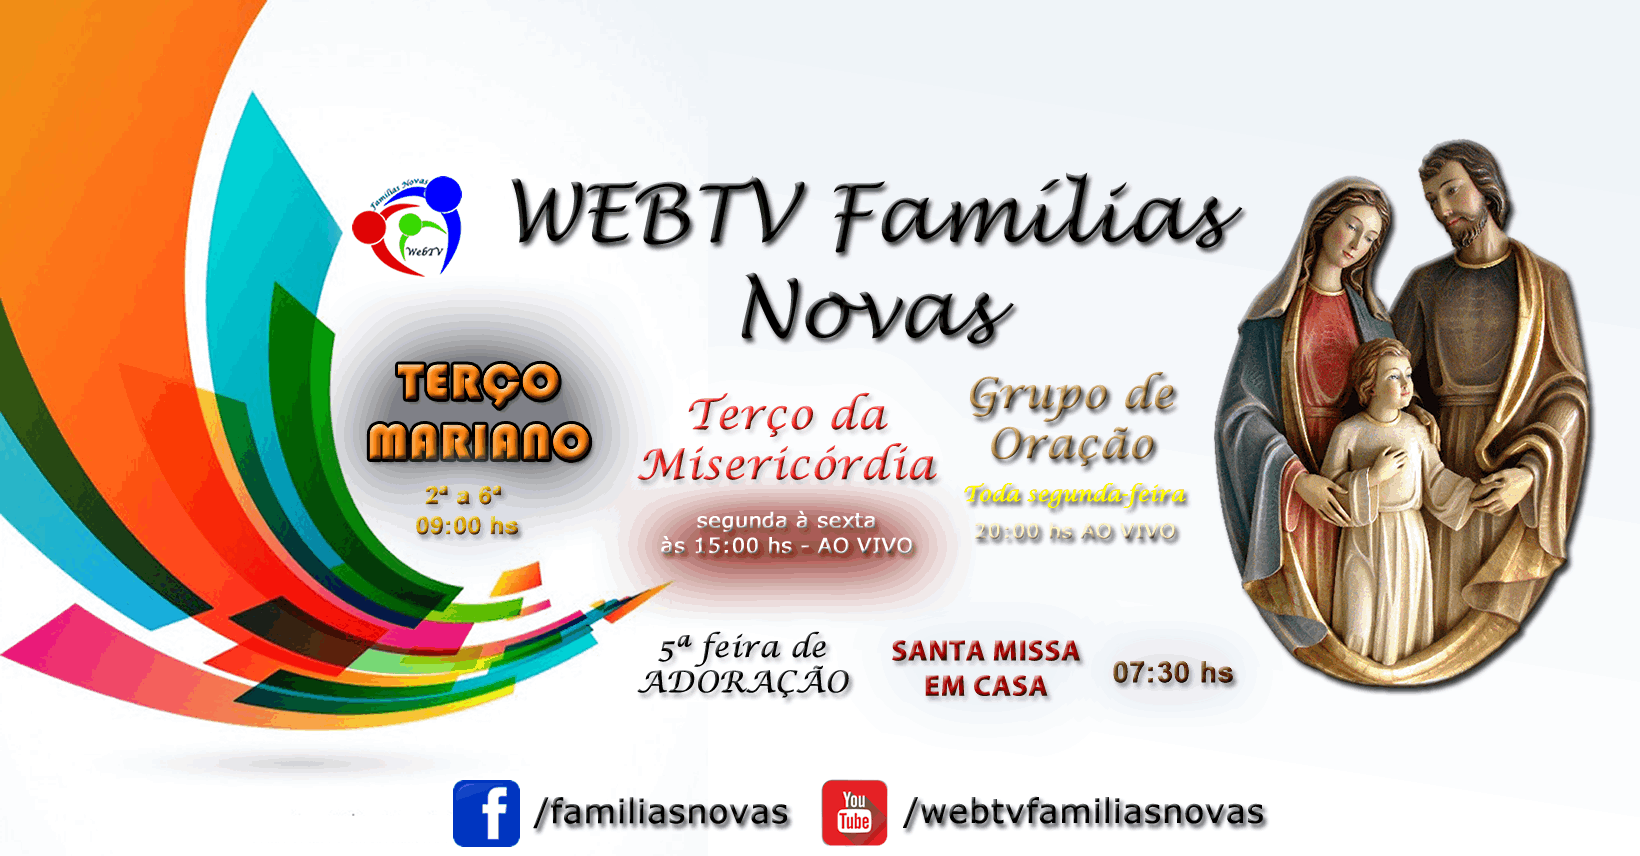 Webtv Famílias Novas